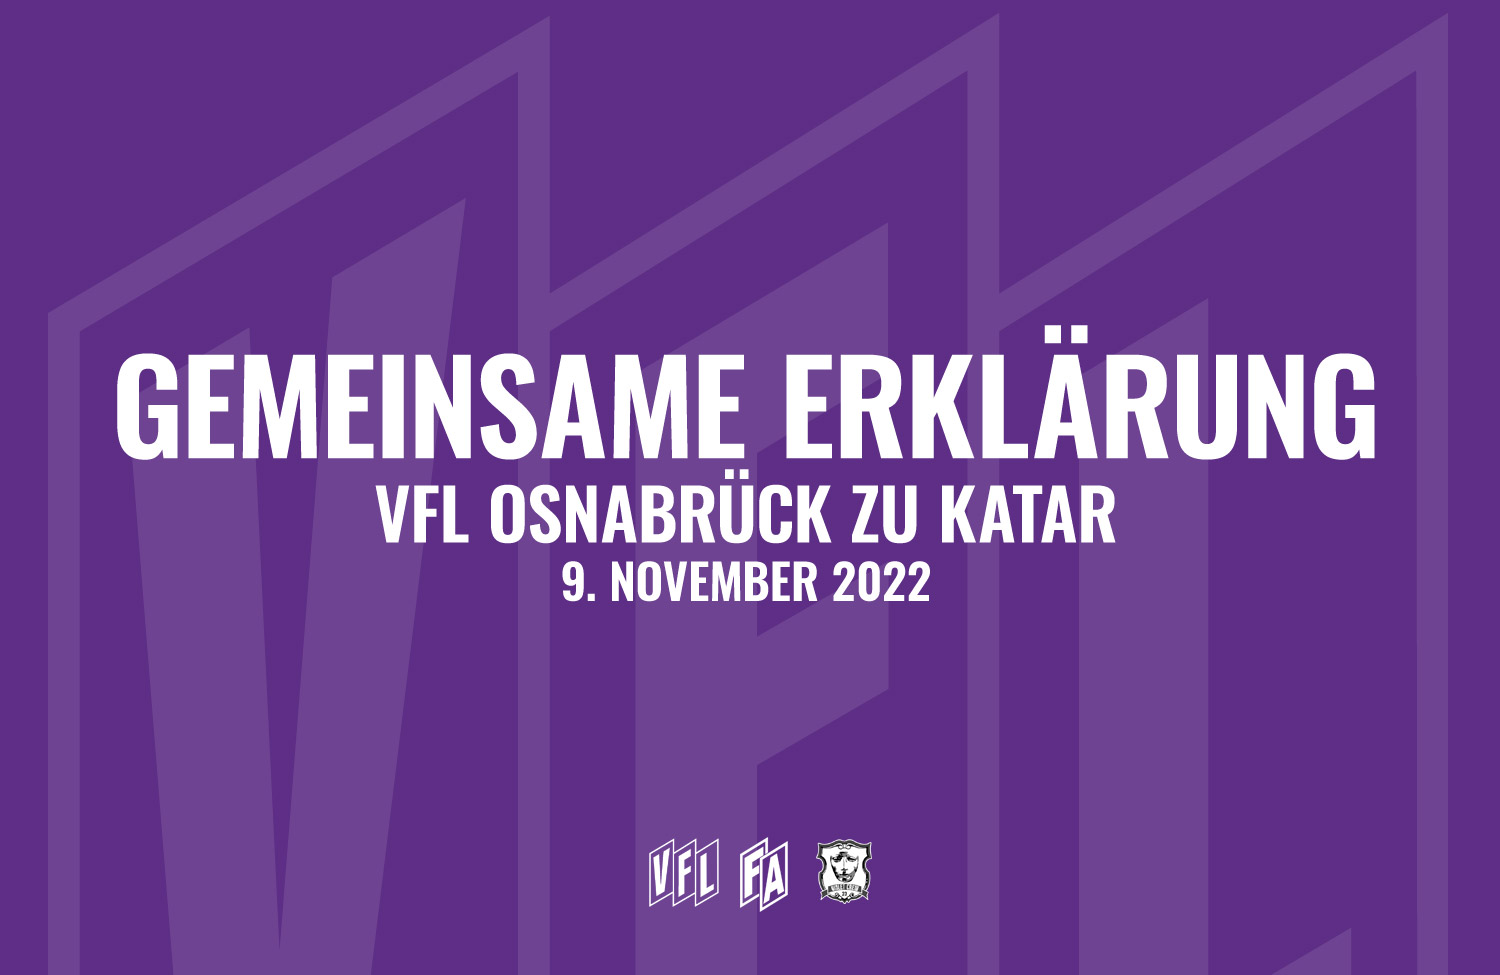 VfL Osnabrück zu Katar - Gemeinsame Erklärung